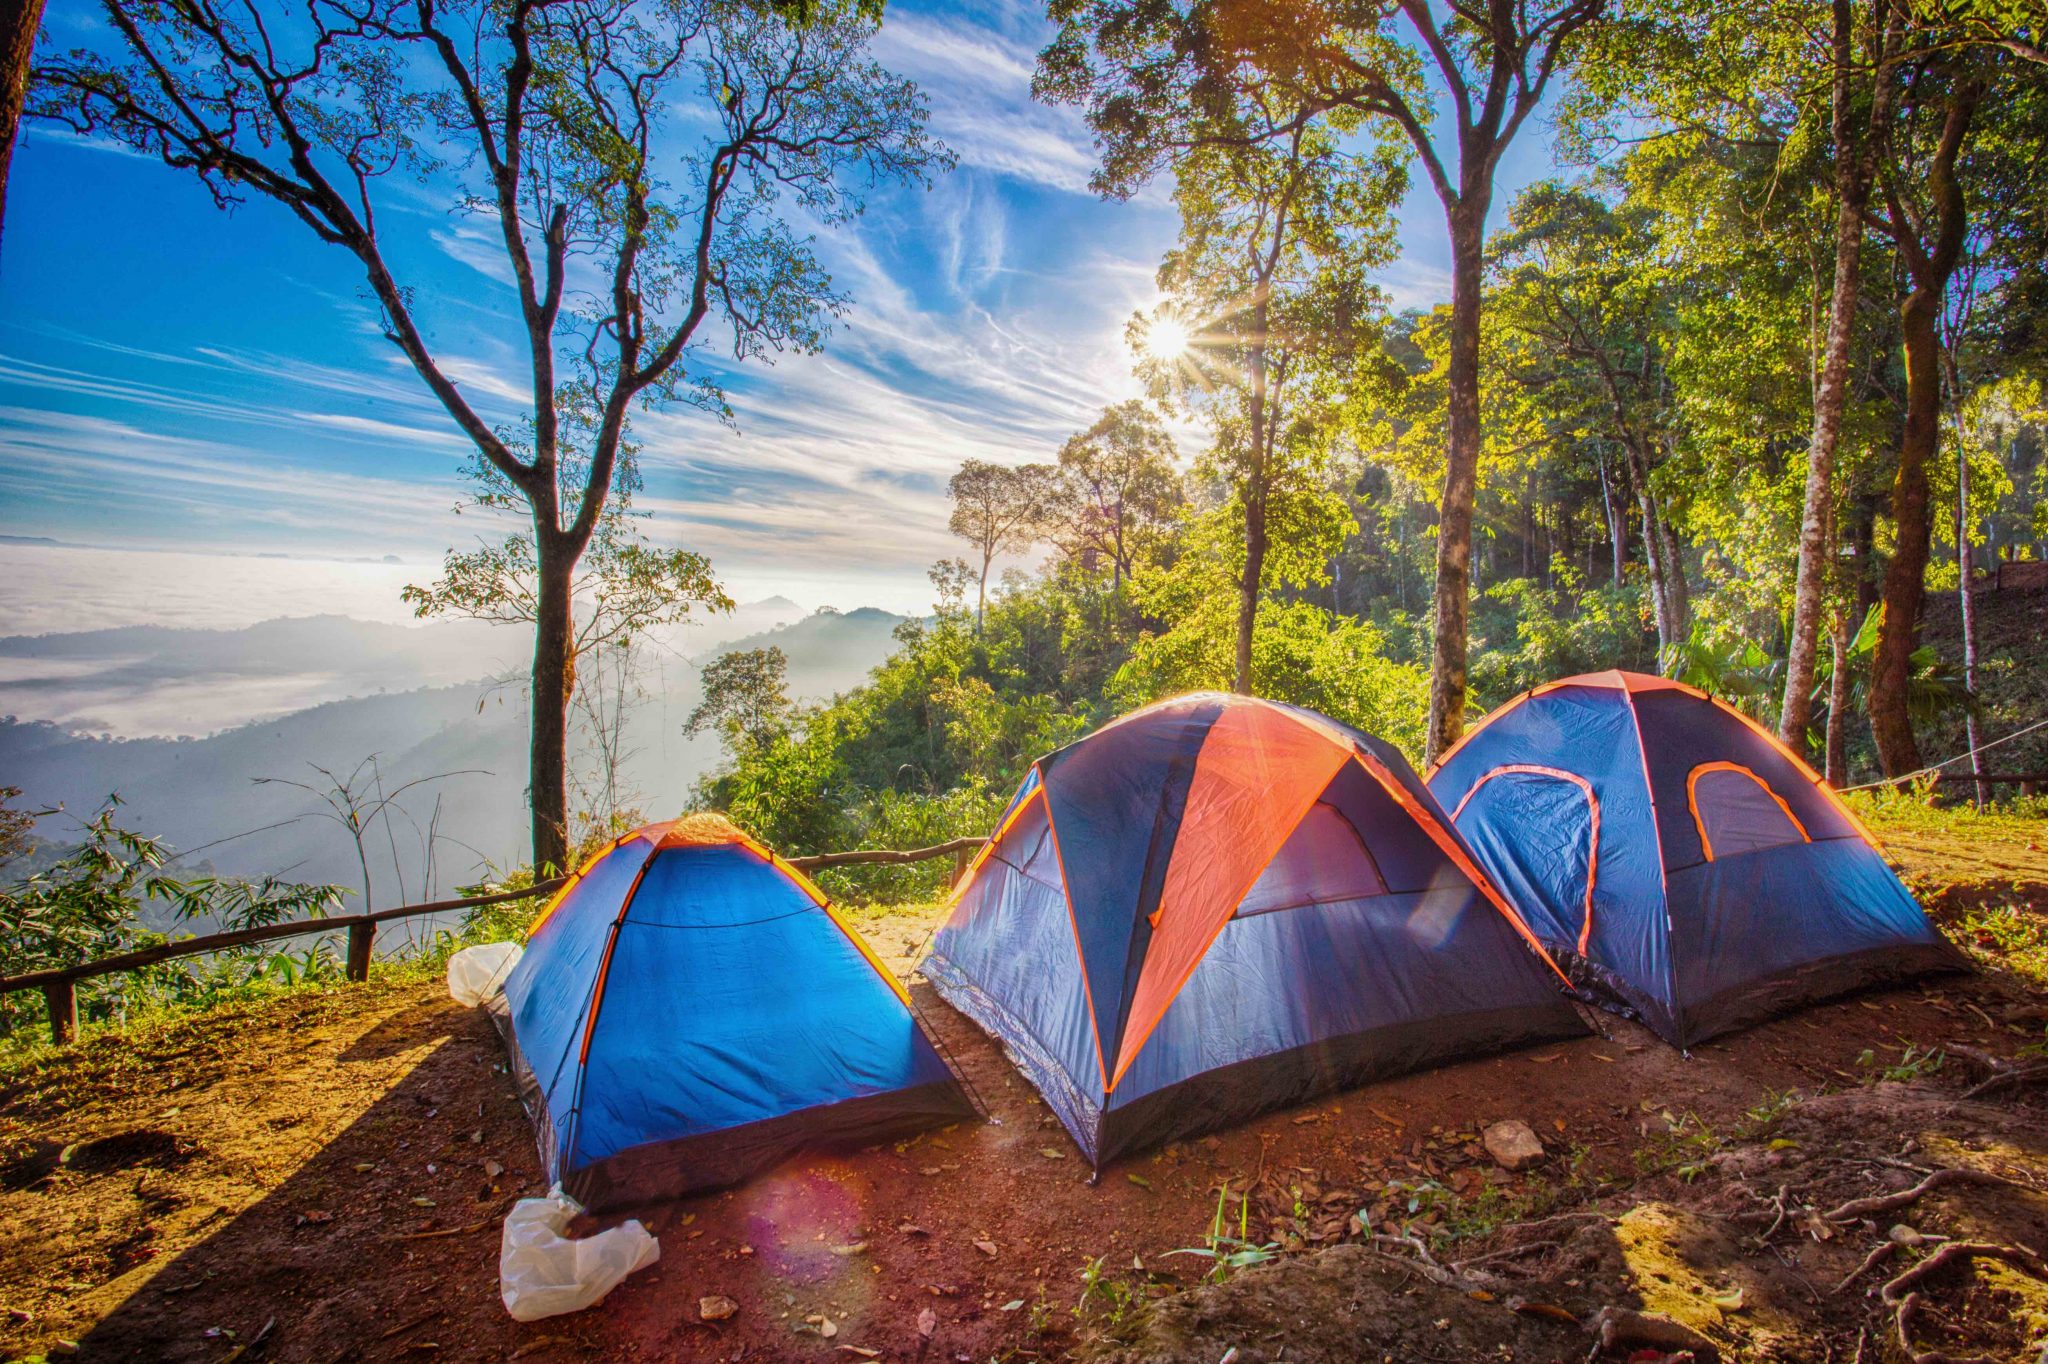 Photo camp. Палатка Ronin Camp. Палатка на природе. Туристическая палатка на природе. Палаточный кемпинг.